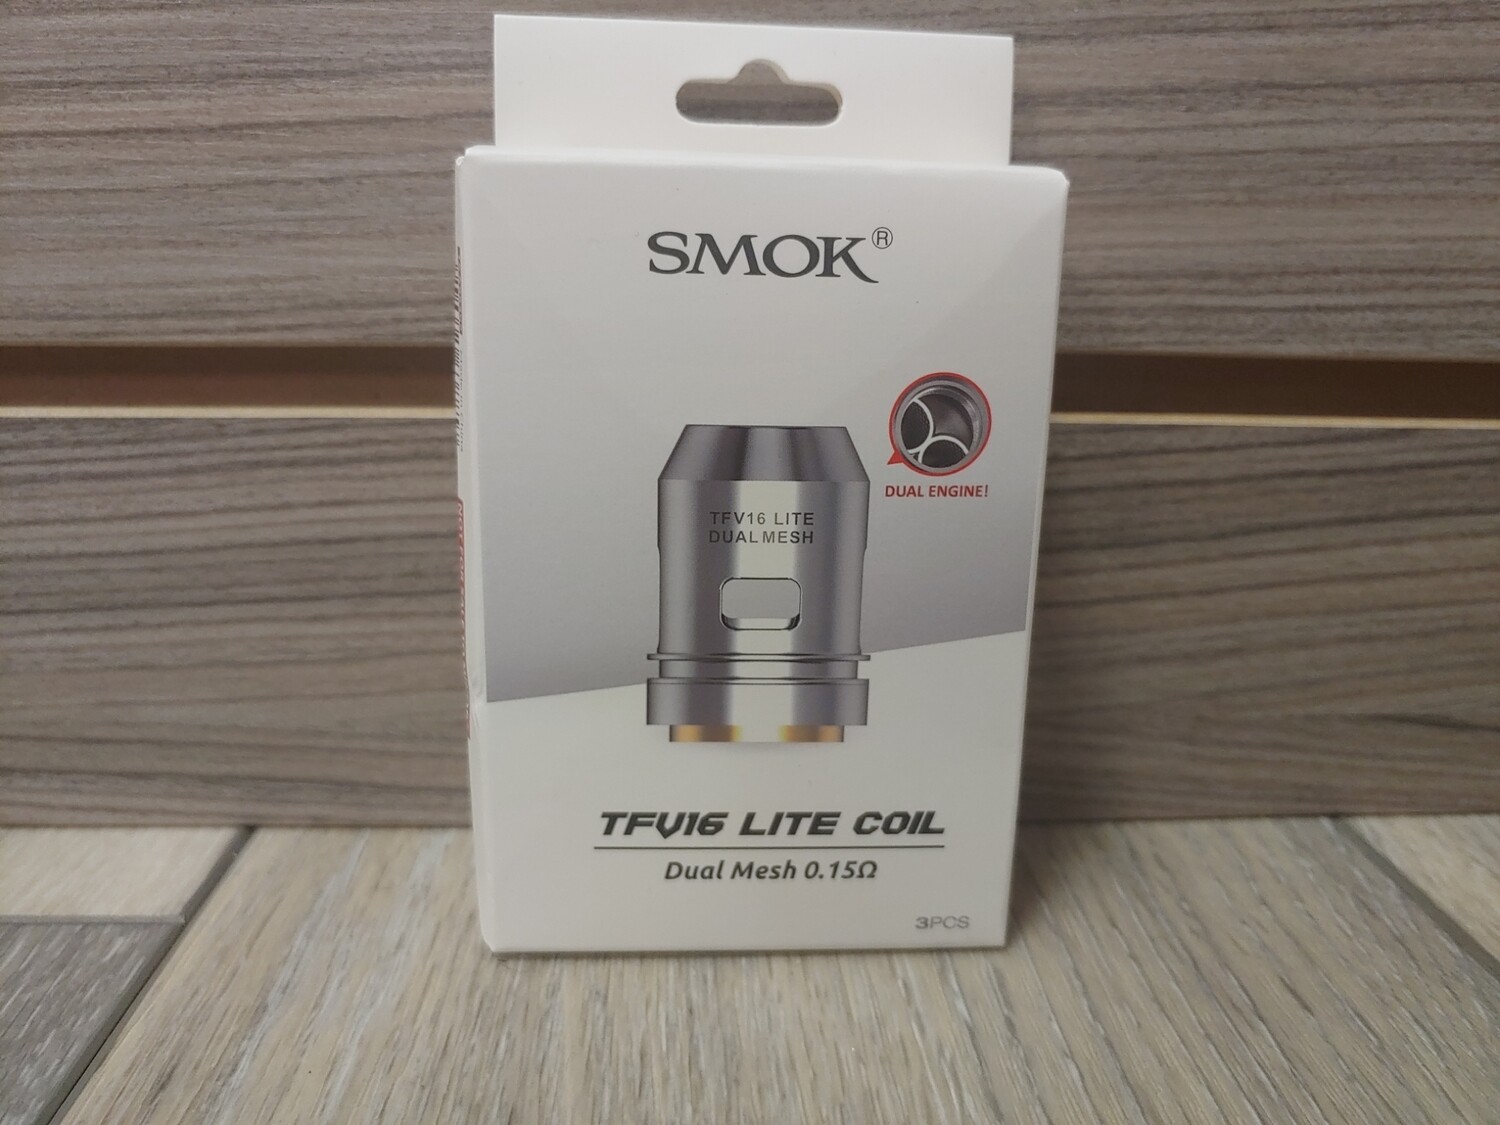 Smok Tech Tfv16 3pcs Coil Dual Mesh 0.15q